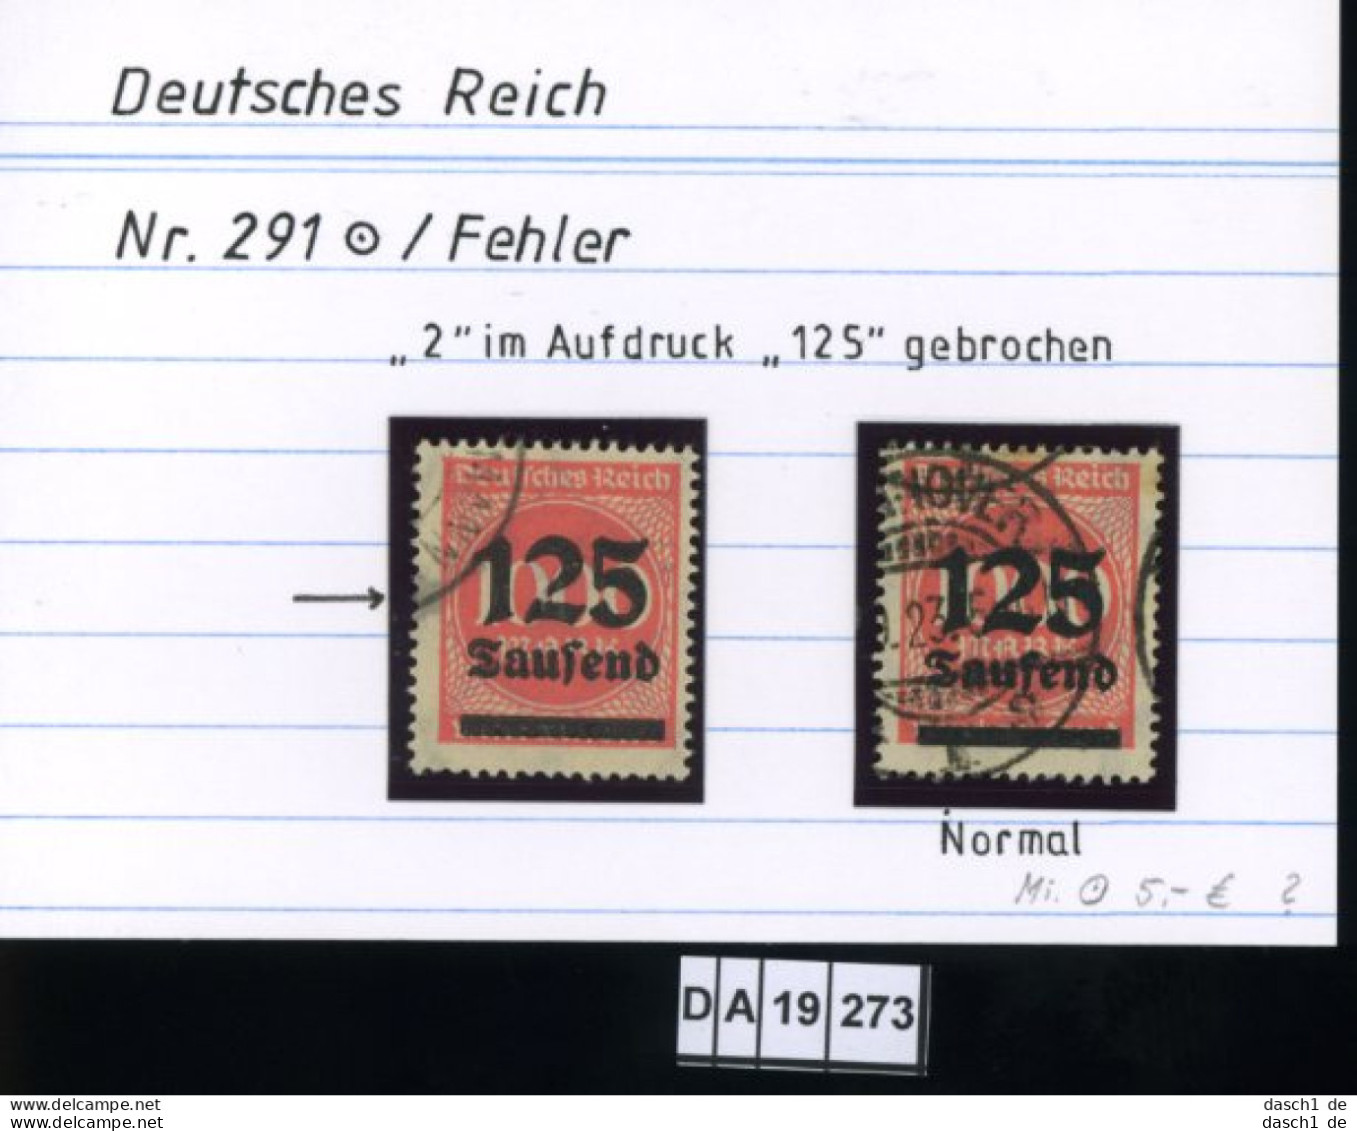 Deutsches Reich , 3 Lose U.a. 333 , PLF / Abart - Siehe Foto - Abklatsch - Errors & Oddities